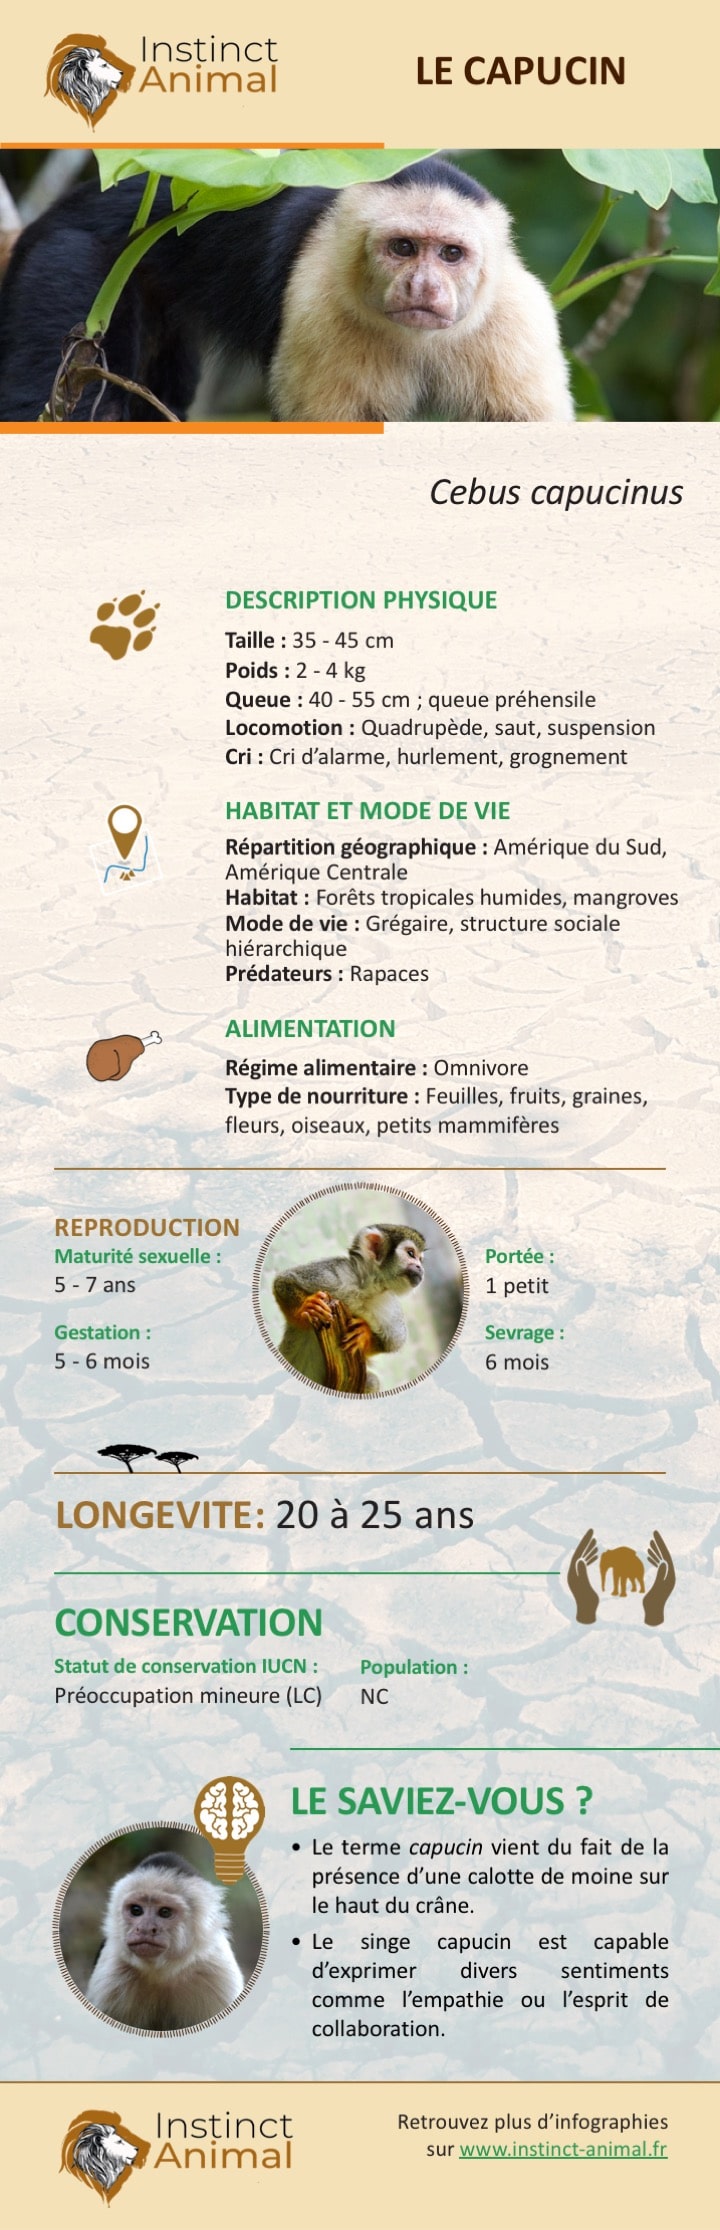 Description du capucin - Infographie - Instinct Animal